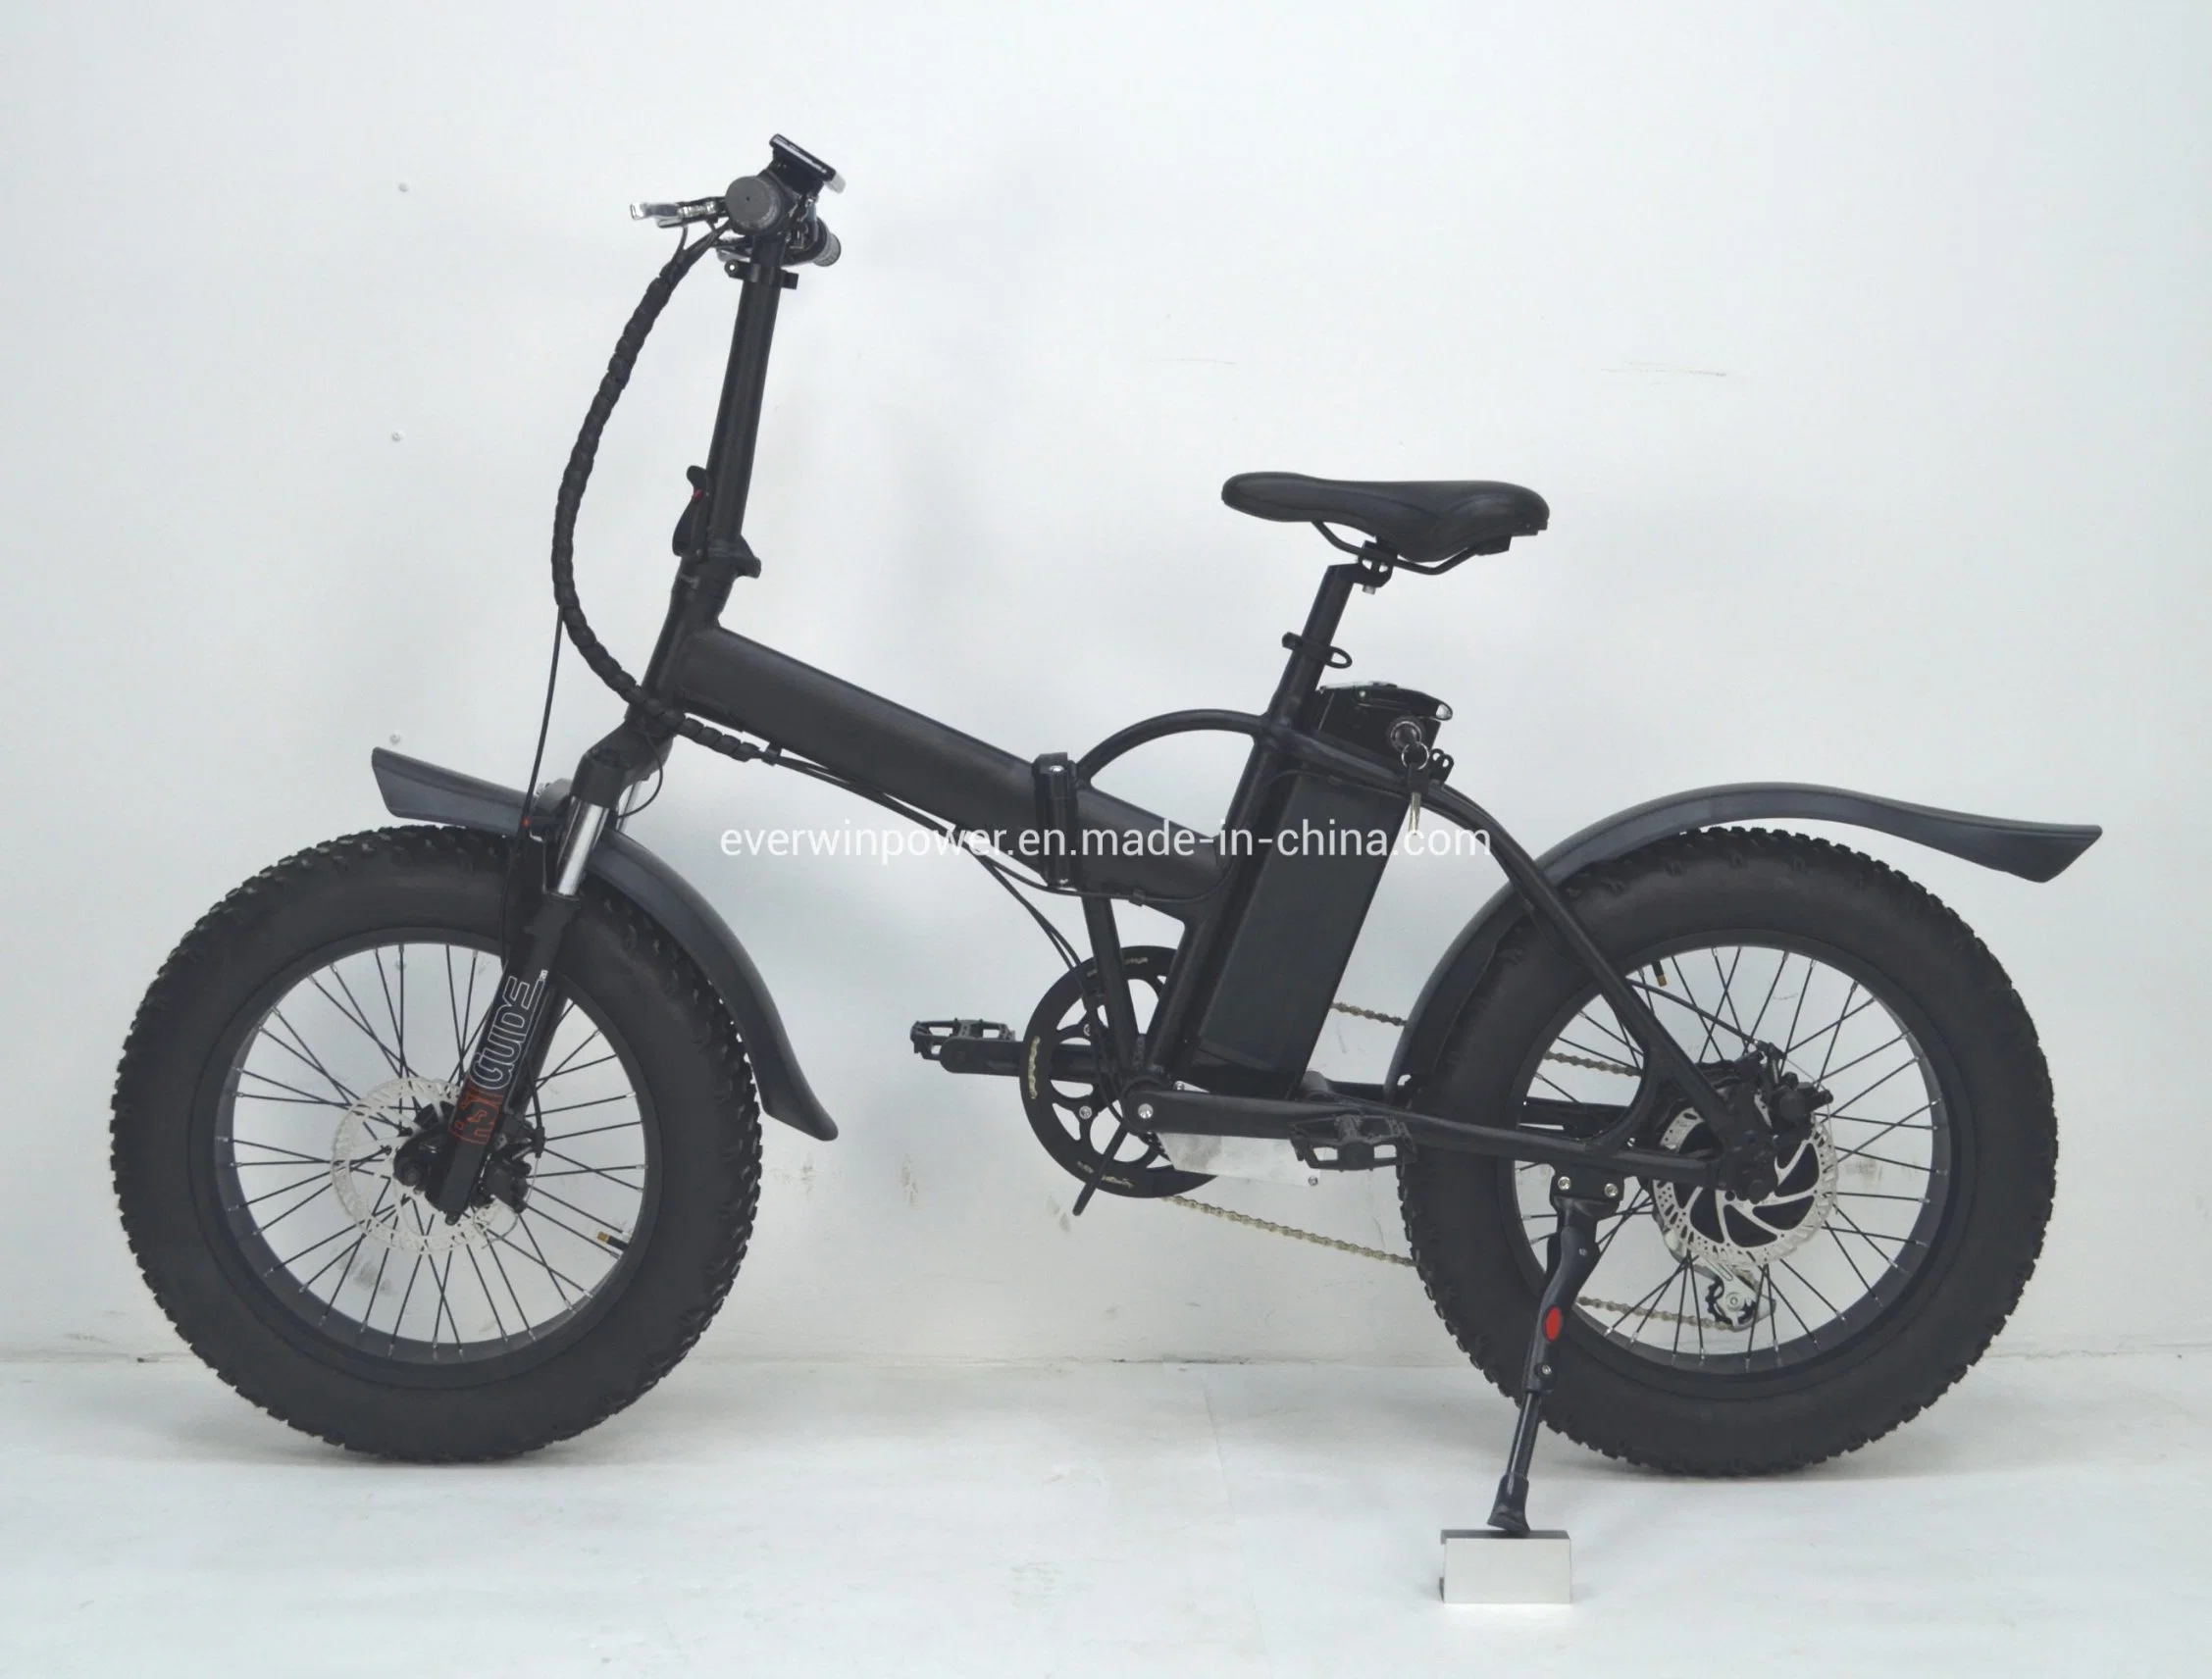 500W20&rdquor; Fat Tire Electric Bicycle

500W20&rdquor; Vélo électrique à pneus gras